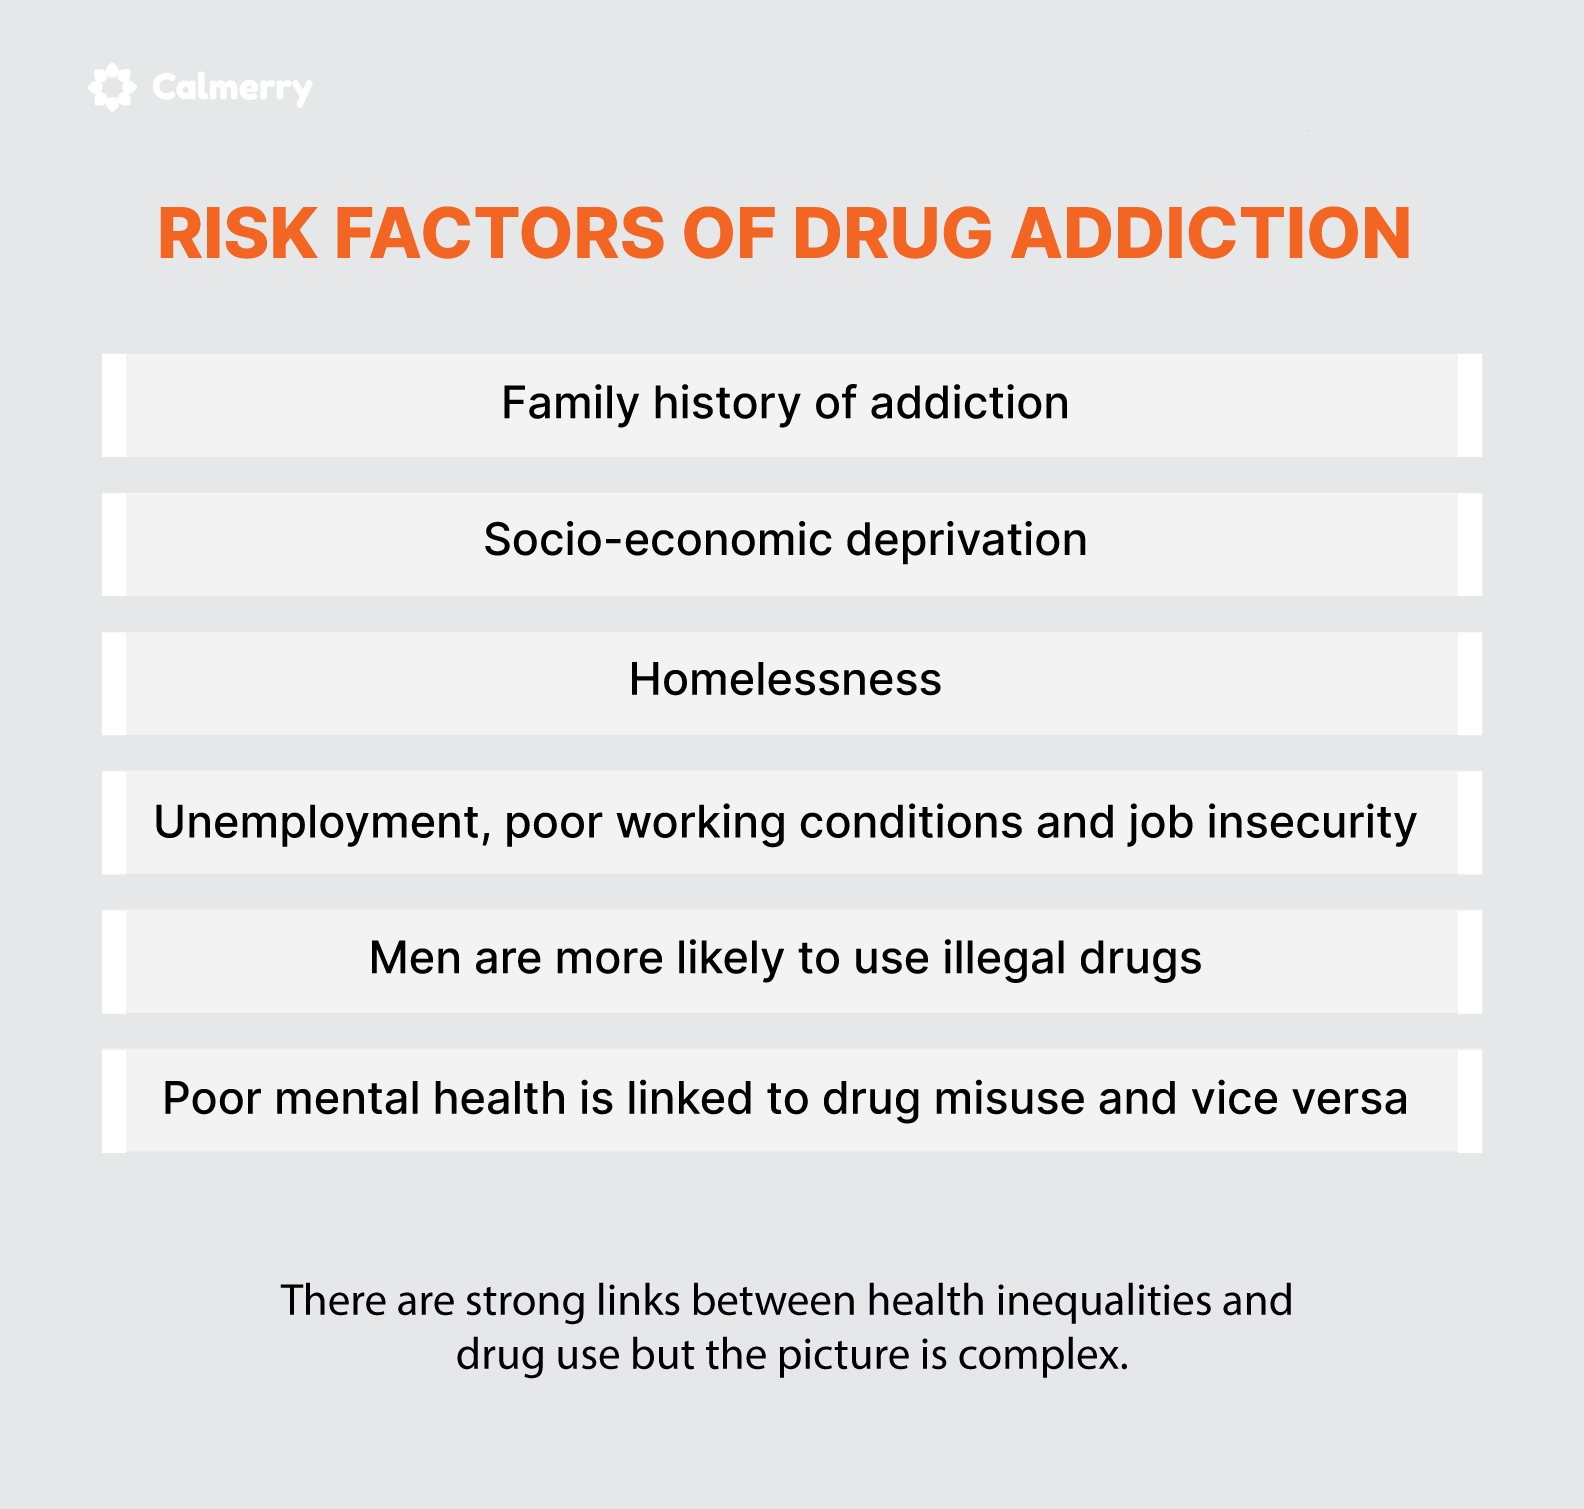 Risk factors of drug addiction